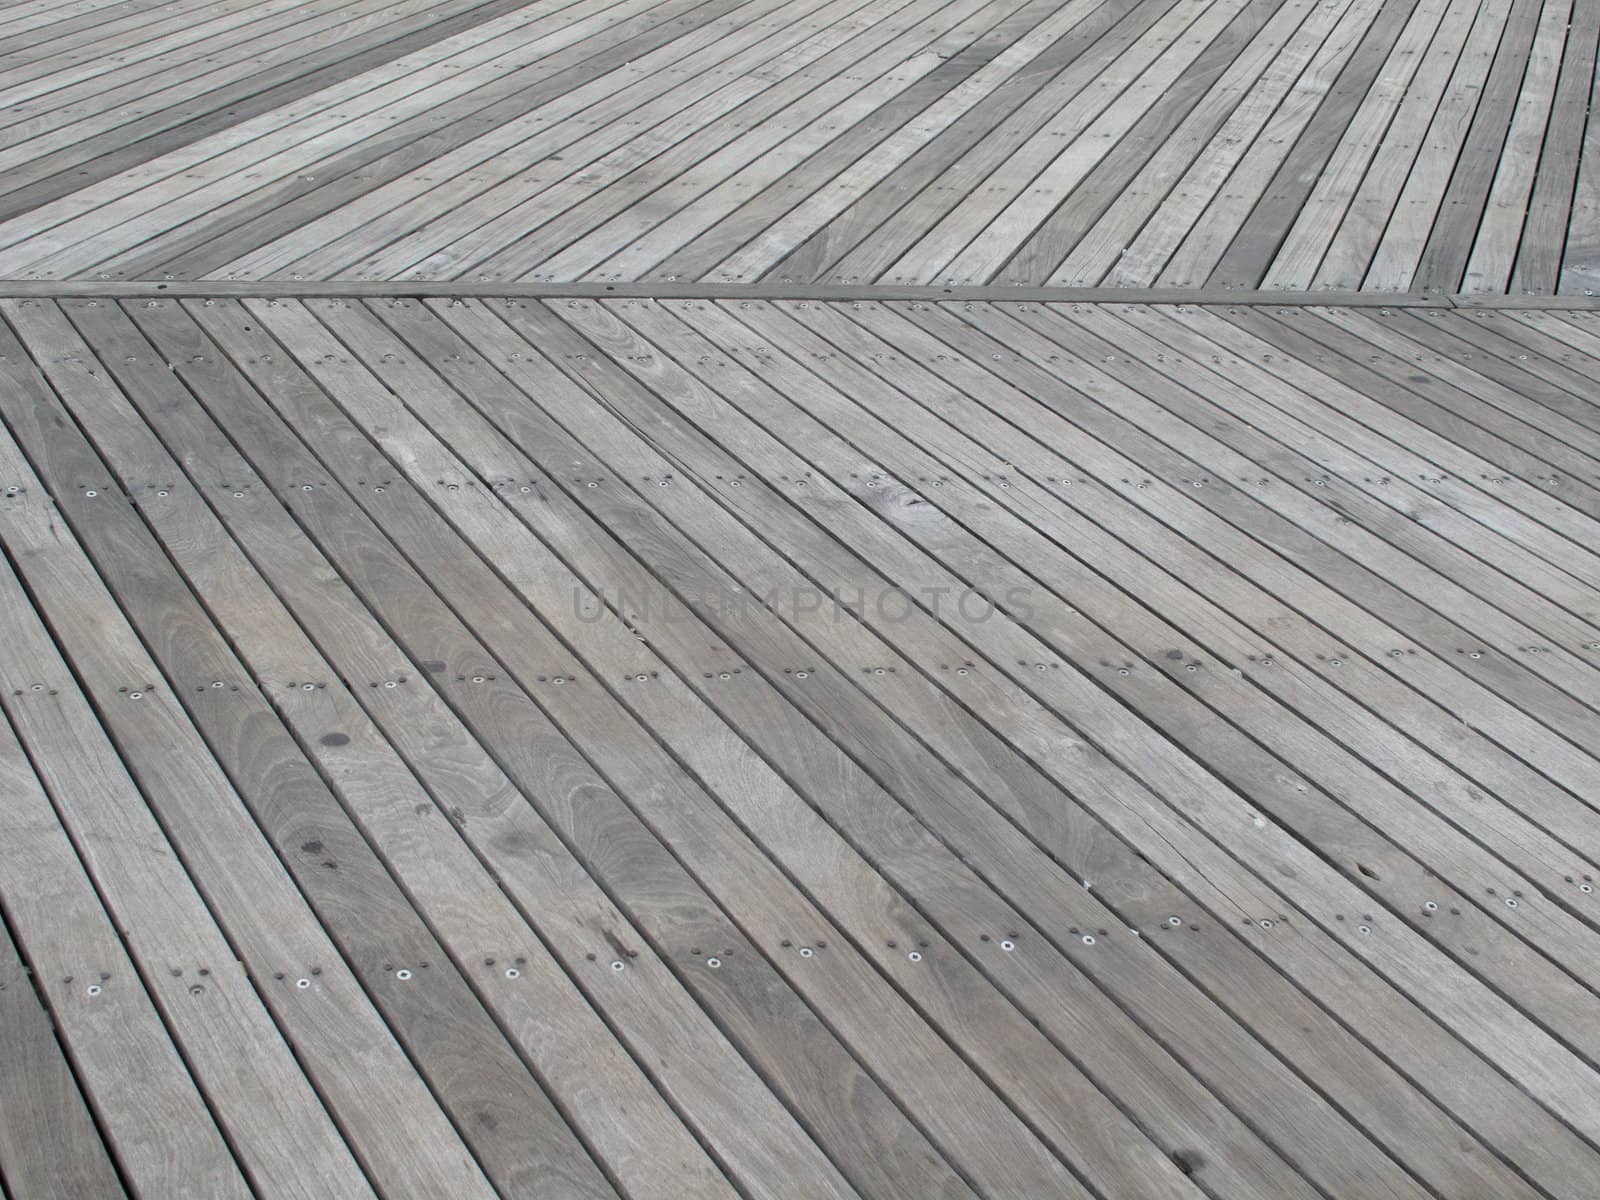 Wooden boardwalk near beach in Atlantic City, New Jersey